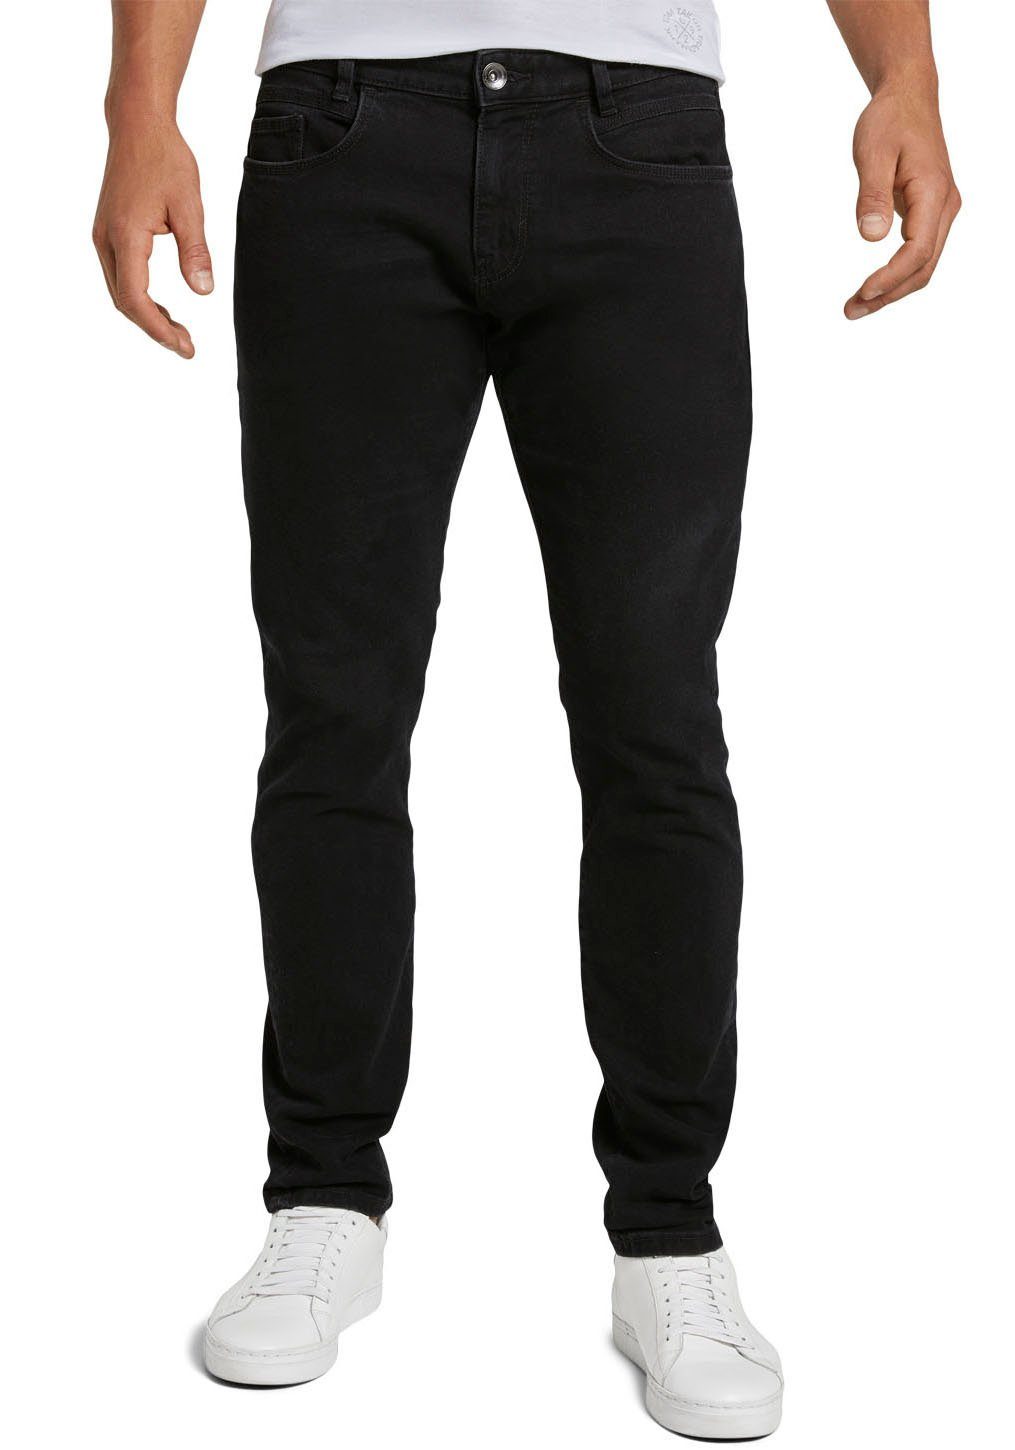 TOM TAILOR Slim-fit-Jeans TROY unifarben black-denim